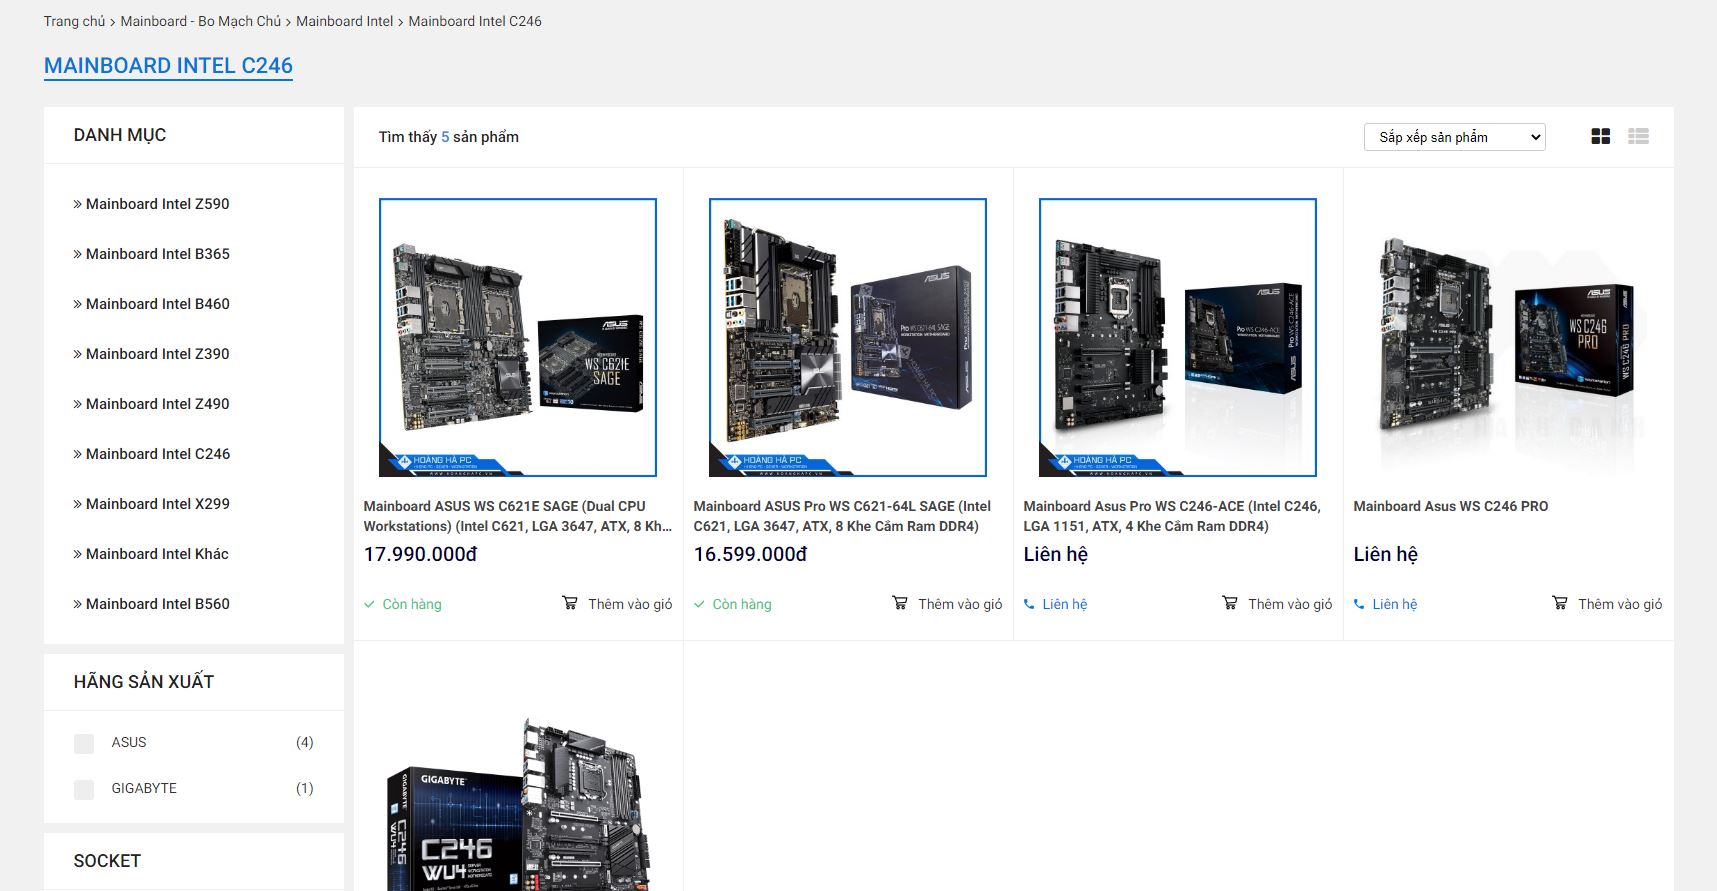 Hoàng Hà PC - điểm đến tin cậy để mua Mainboard Intel C246 chính hãng, giá tốt